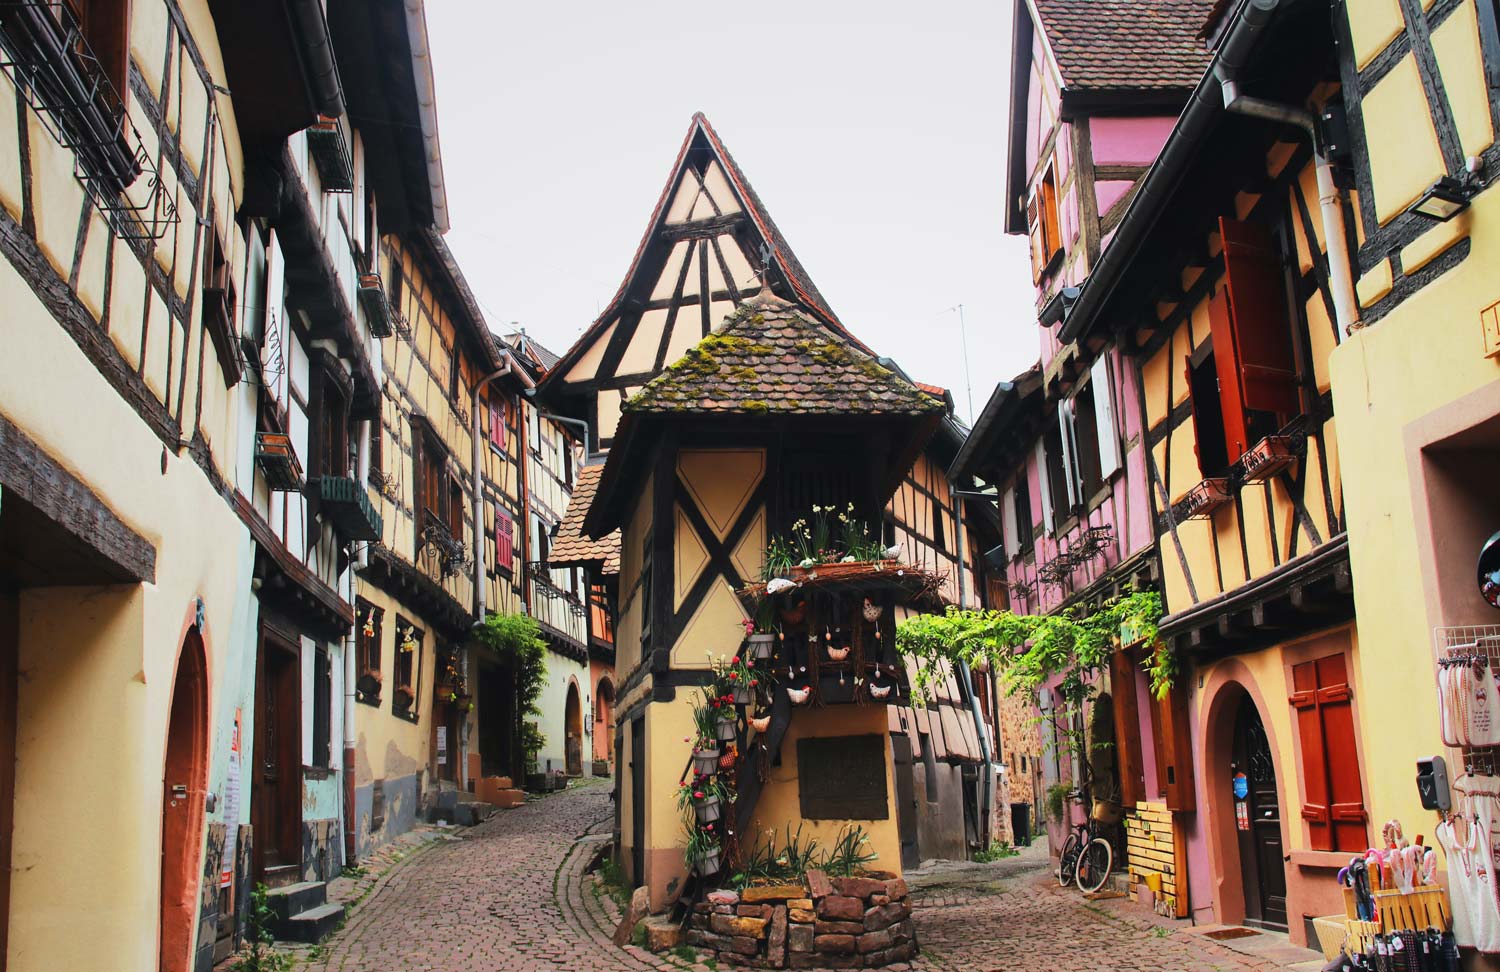 A pretty village called Eguisheim in France